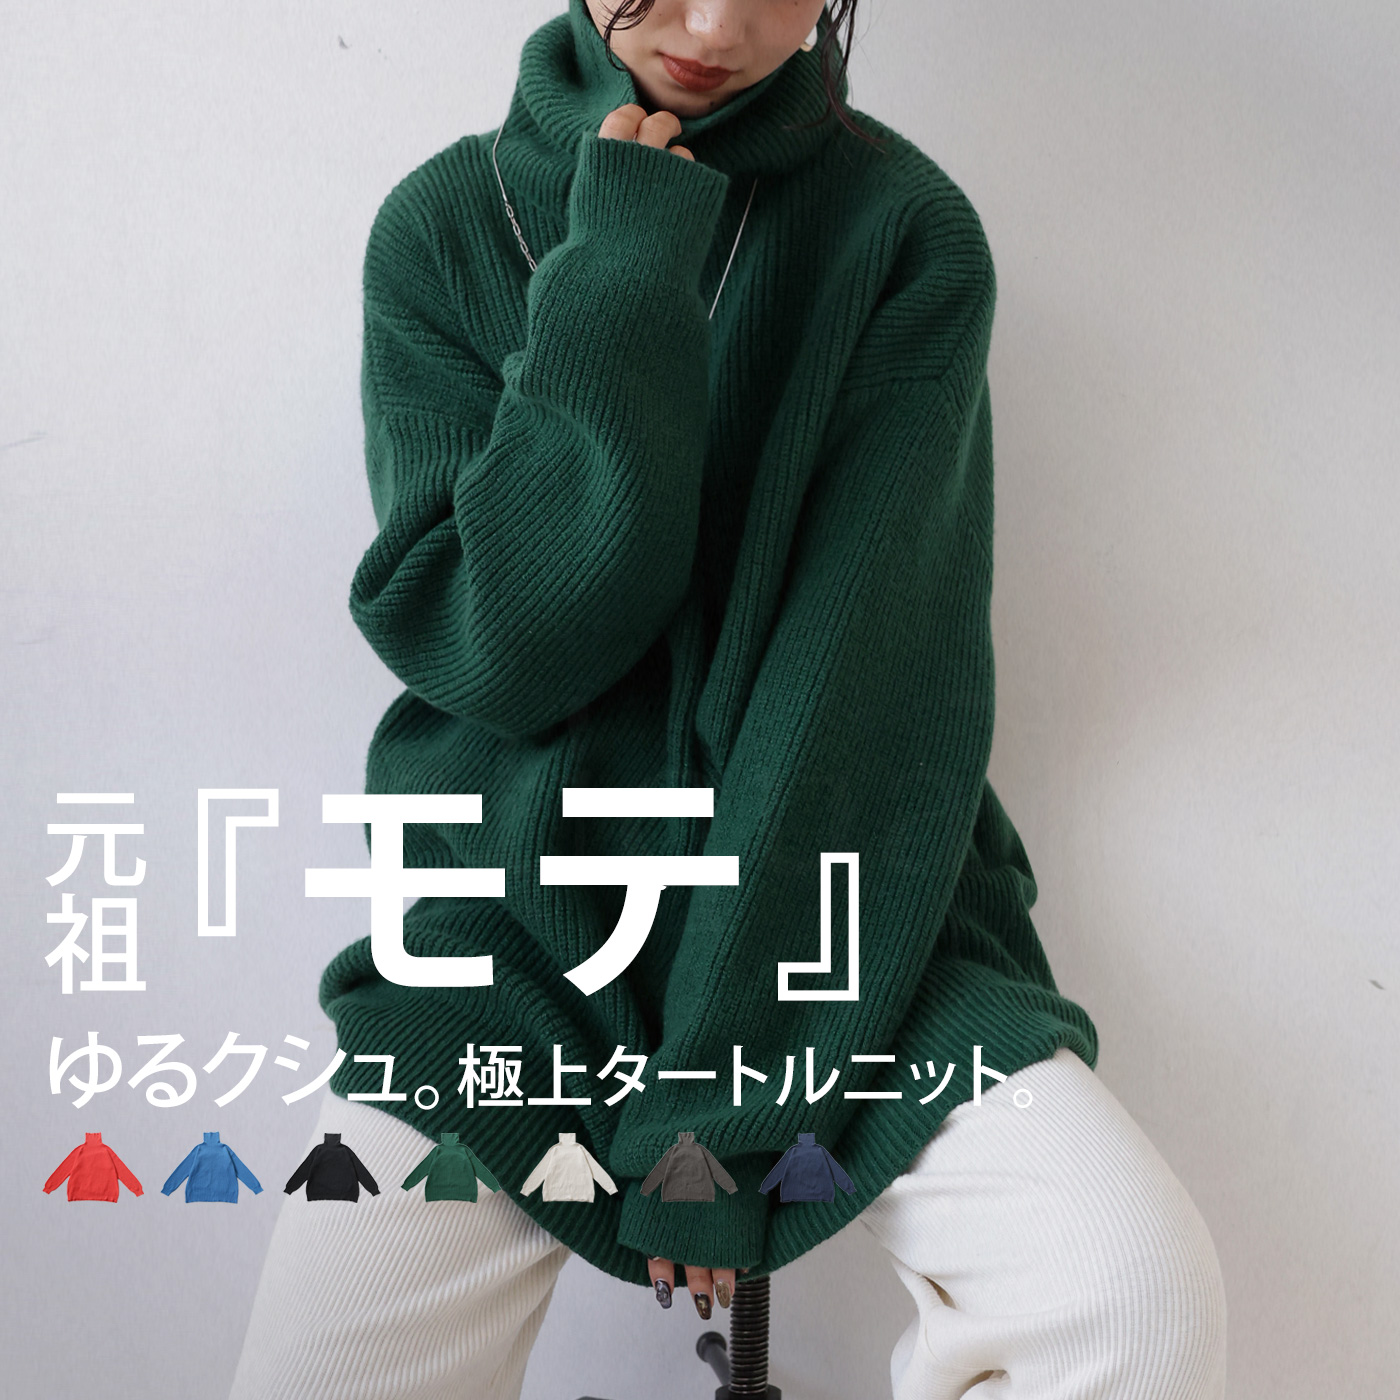 【特価商品】新品❗️ざっくりタートル ニット/セーター